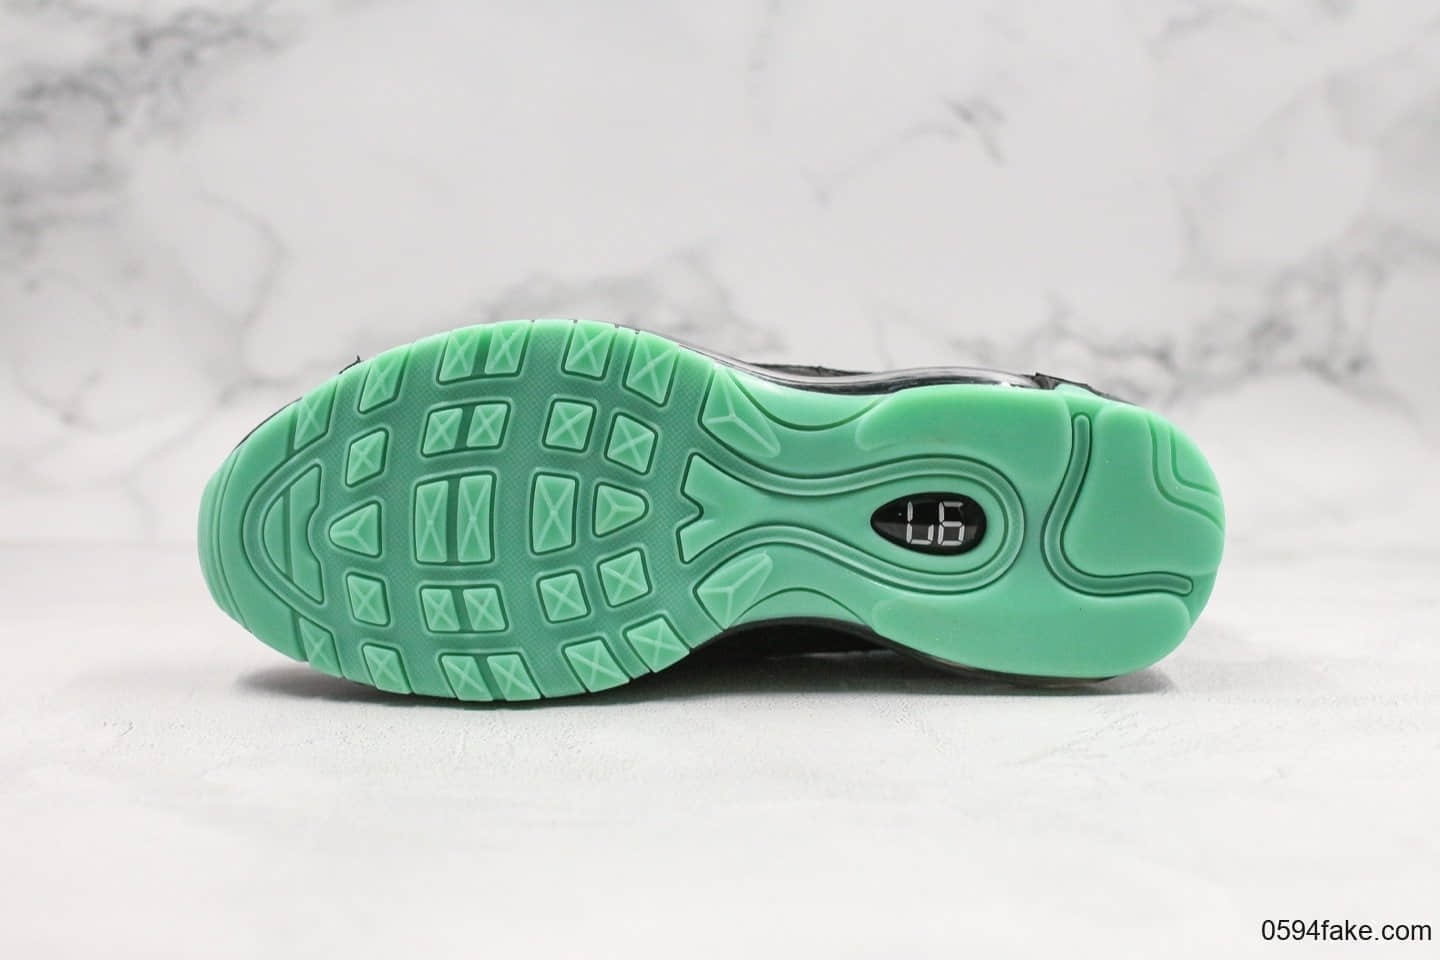 耐克Nike Air Max 97 Premium&#8221;Green Glow复古Max97黑数码骇客帝国绿配色 921826-017 - 耐克气垫鞋, 耐克全掌气垫, 耐克Air Max 97, Nike Air Max 97, Nike Air Max, Nike, 921826-017